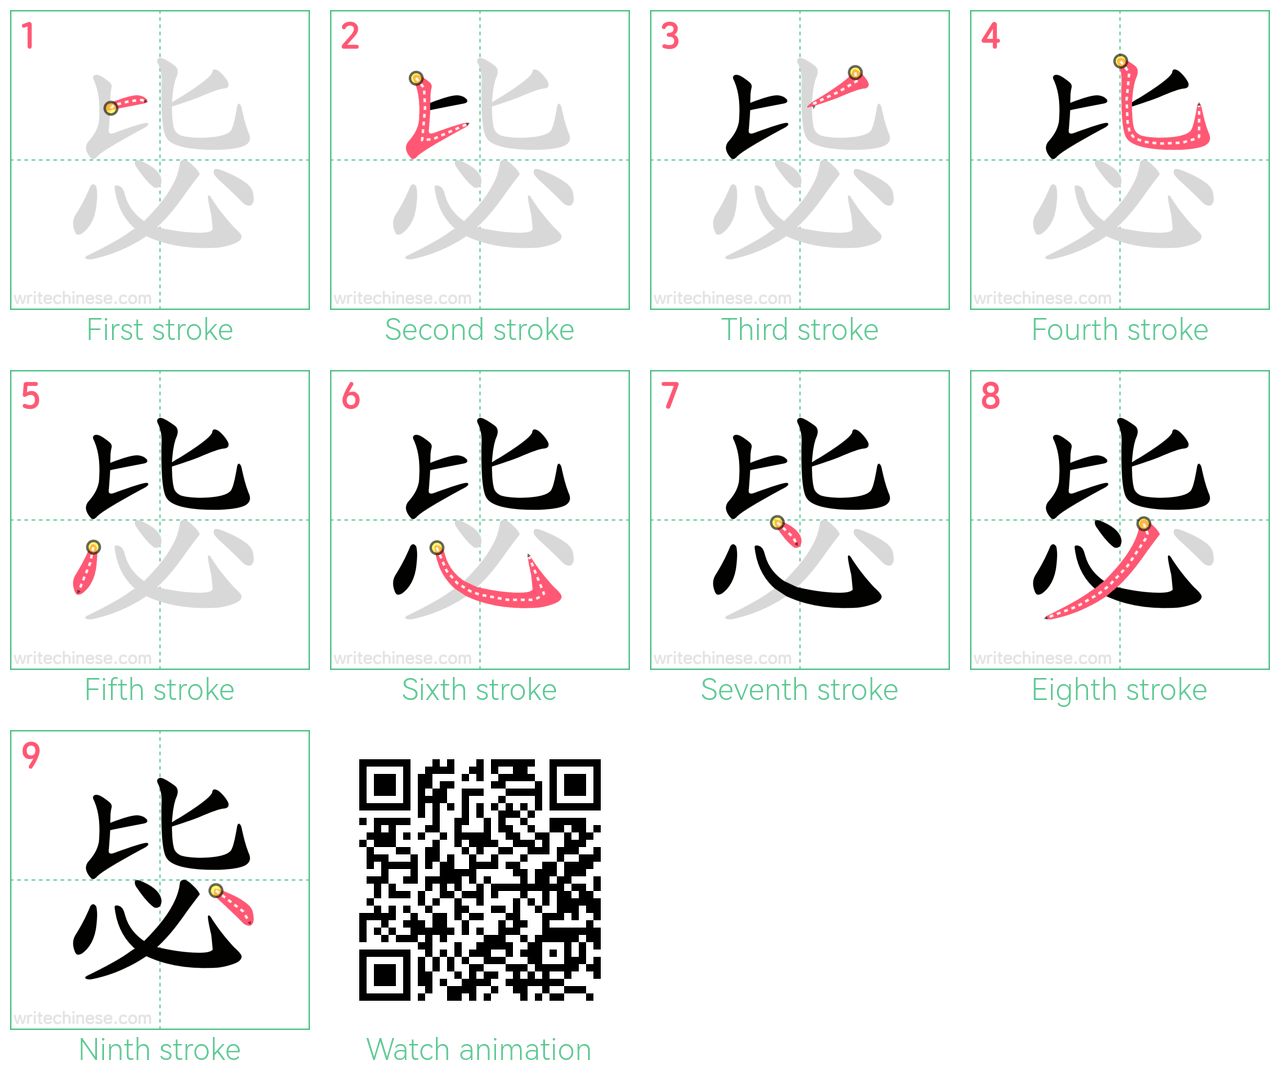 毖 step-by-step stroke order diagrams